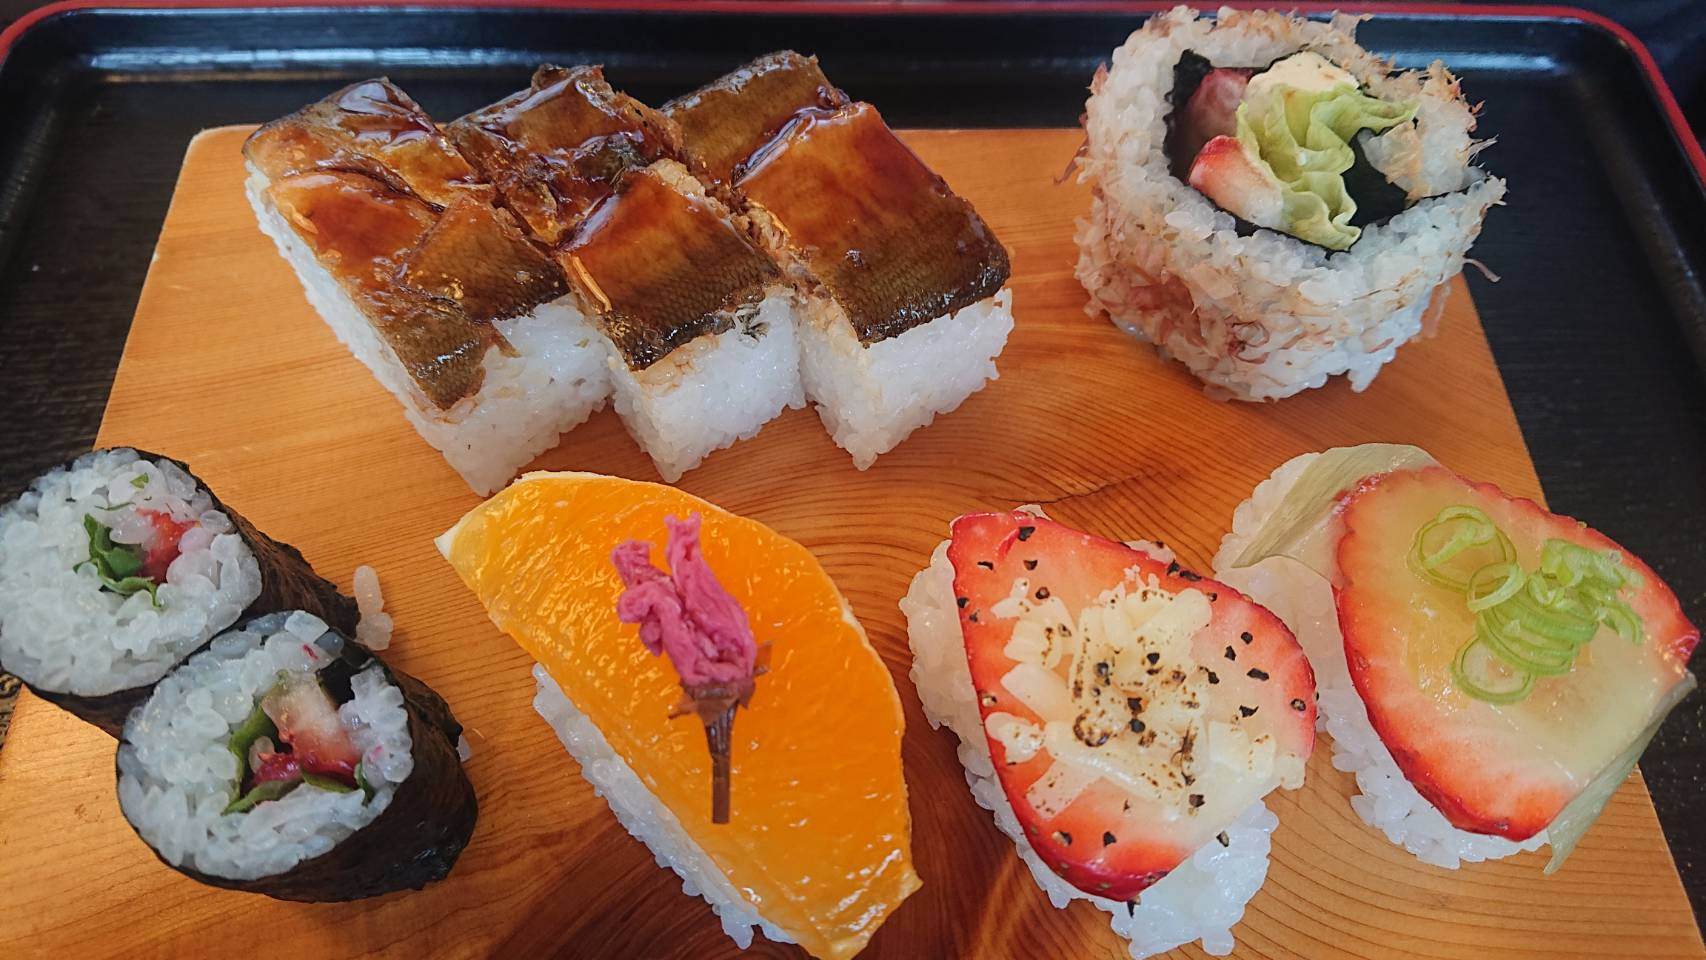 Sushi aux fruits, une spécialité locale composée de fruits frais de saison.